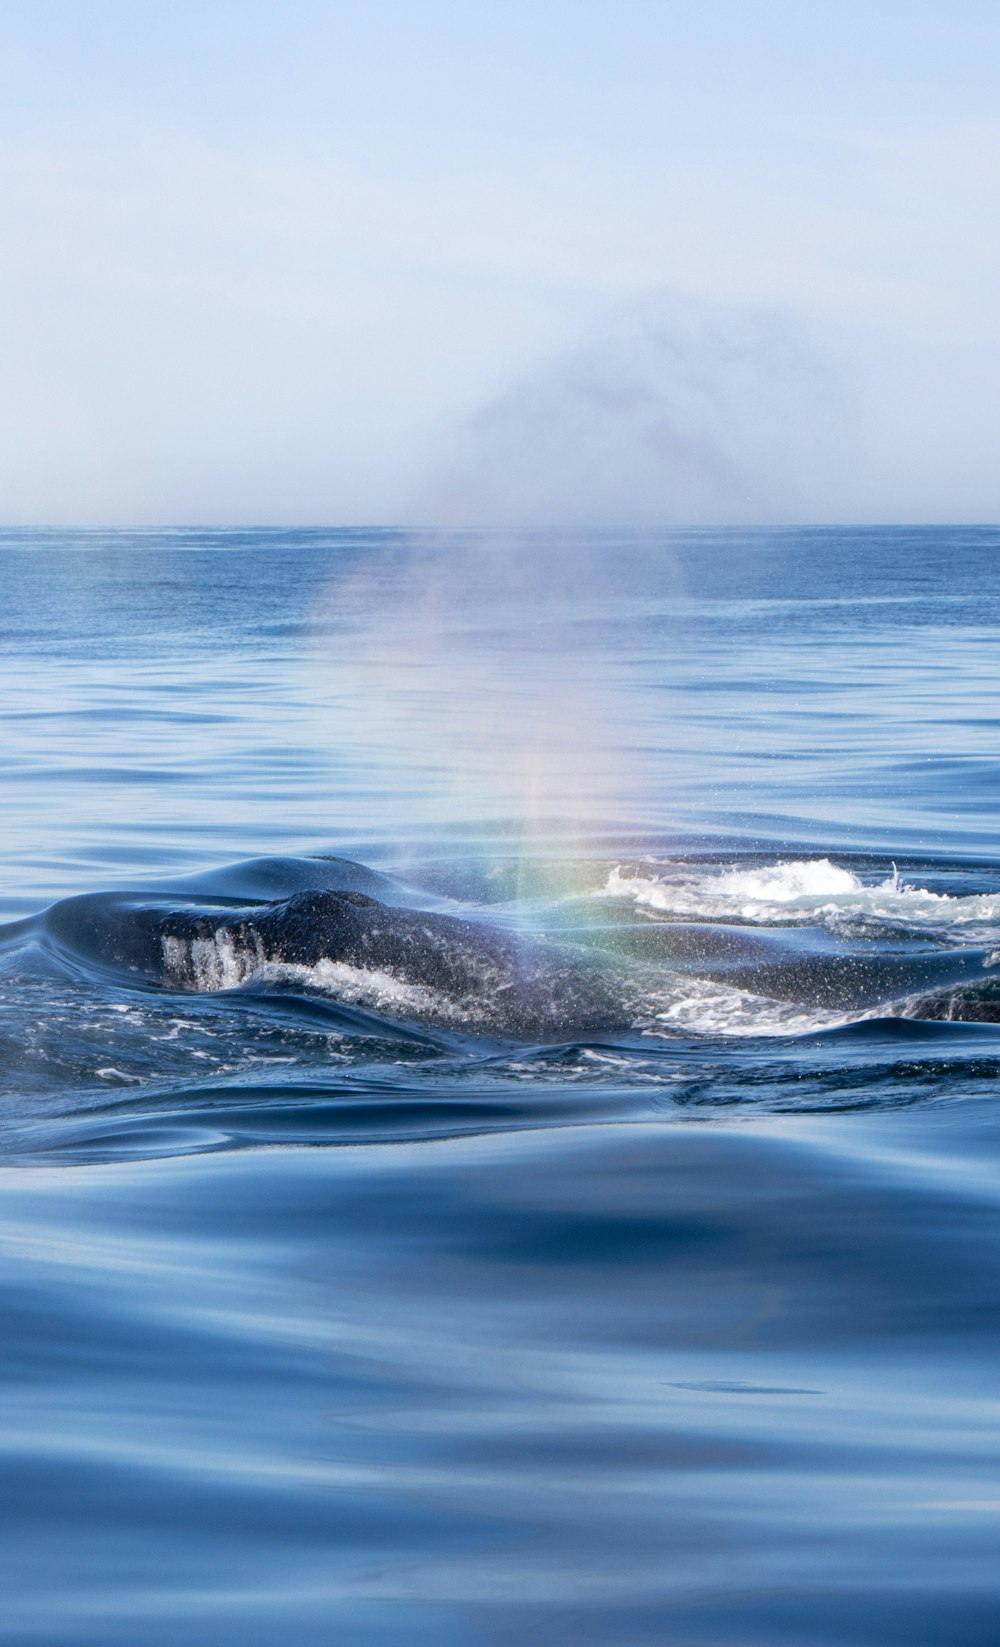 Une baleine qui saute hors de l’eau